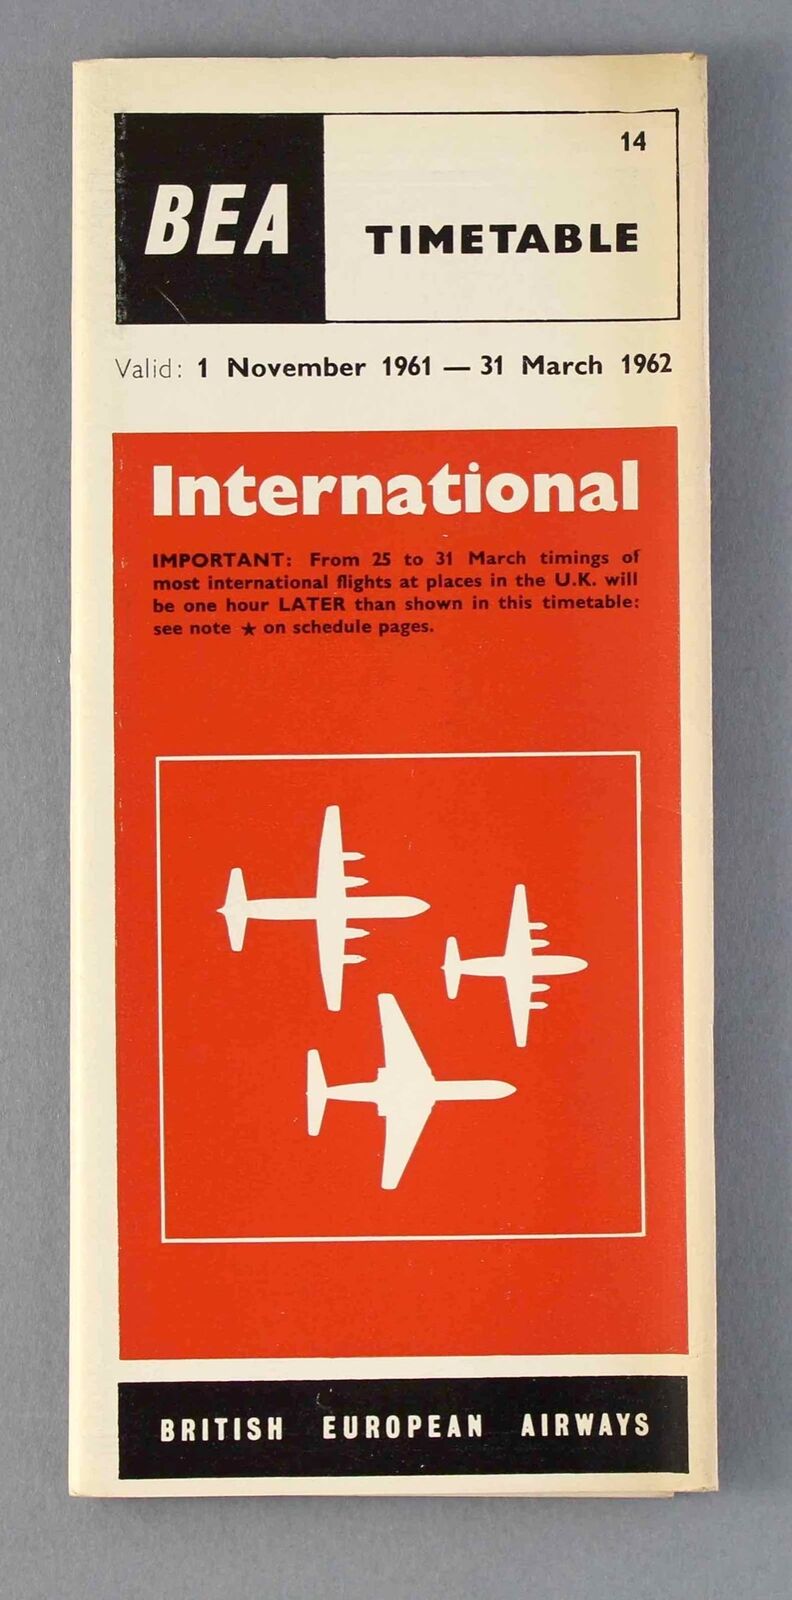 BEA BRITISH EUROPEAN AIRWAYS INTERNATIONAL AIRLINE TIMETABLE WINTER 1961/62 NO14